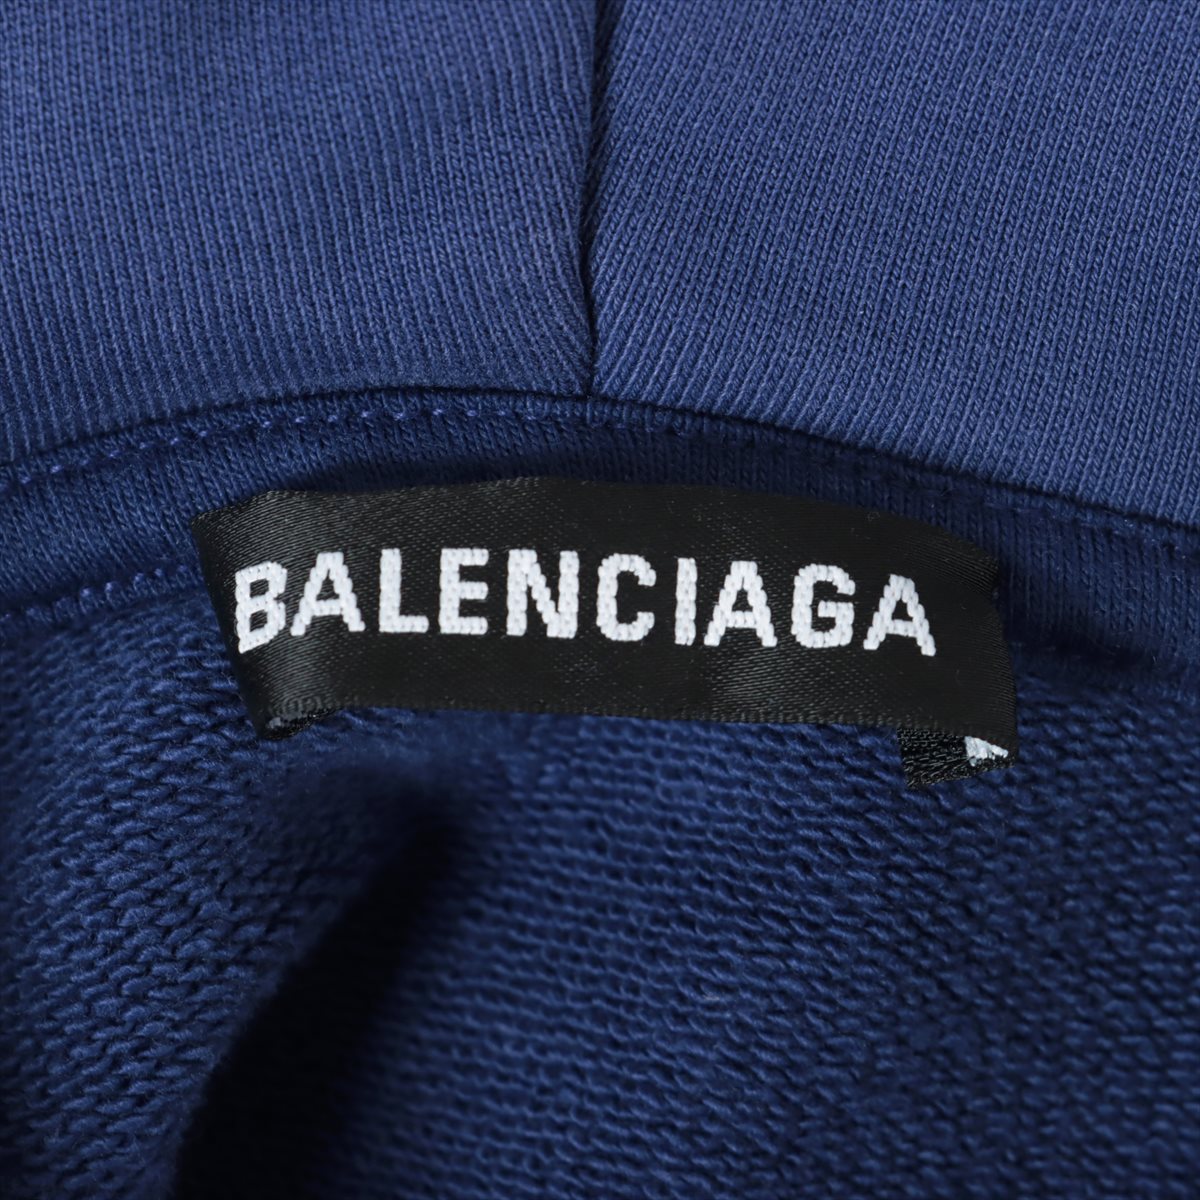 バレンシアガ 20年 コットン パーカー S メンズ パープル  570811 ロゴ